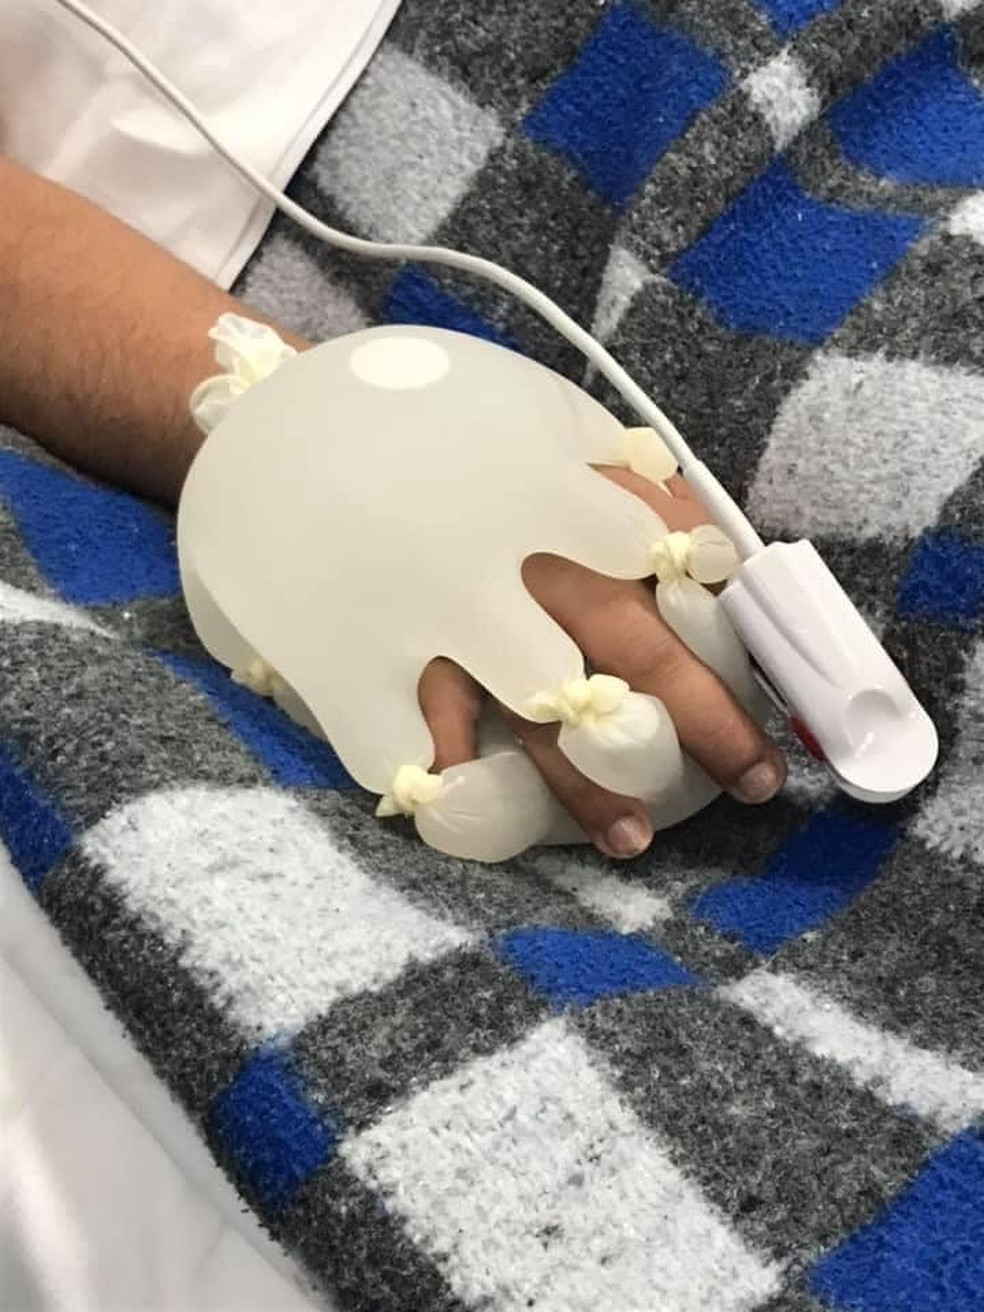 Técnica da 'mãozinha', criada por enfermeira para dar conforto a pacientes com viraliza: 'Foi momento de desespero' | Rio de | G1